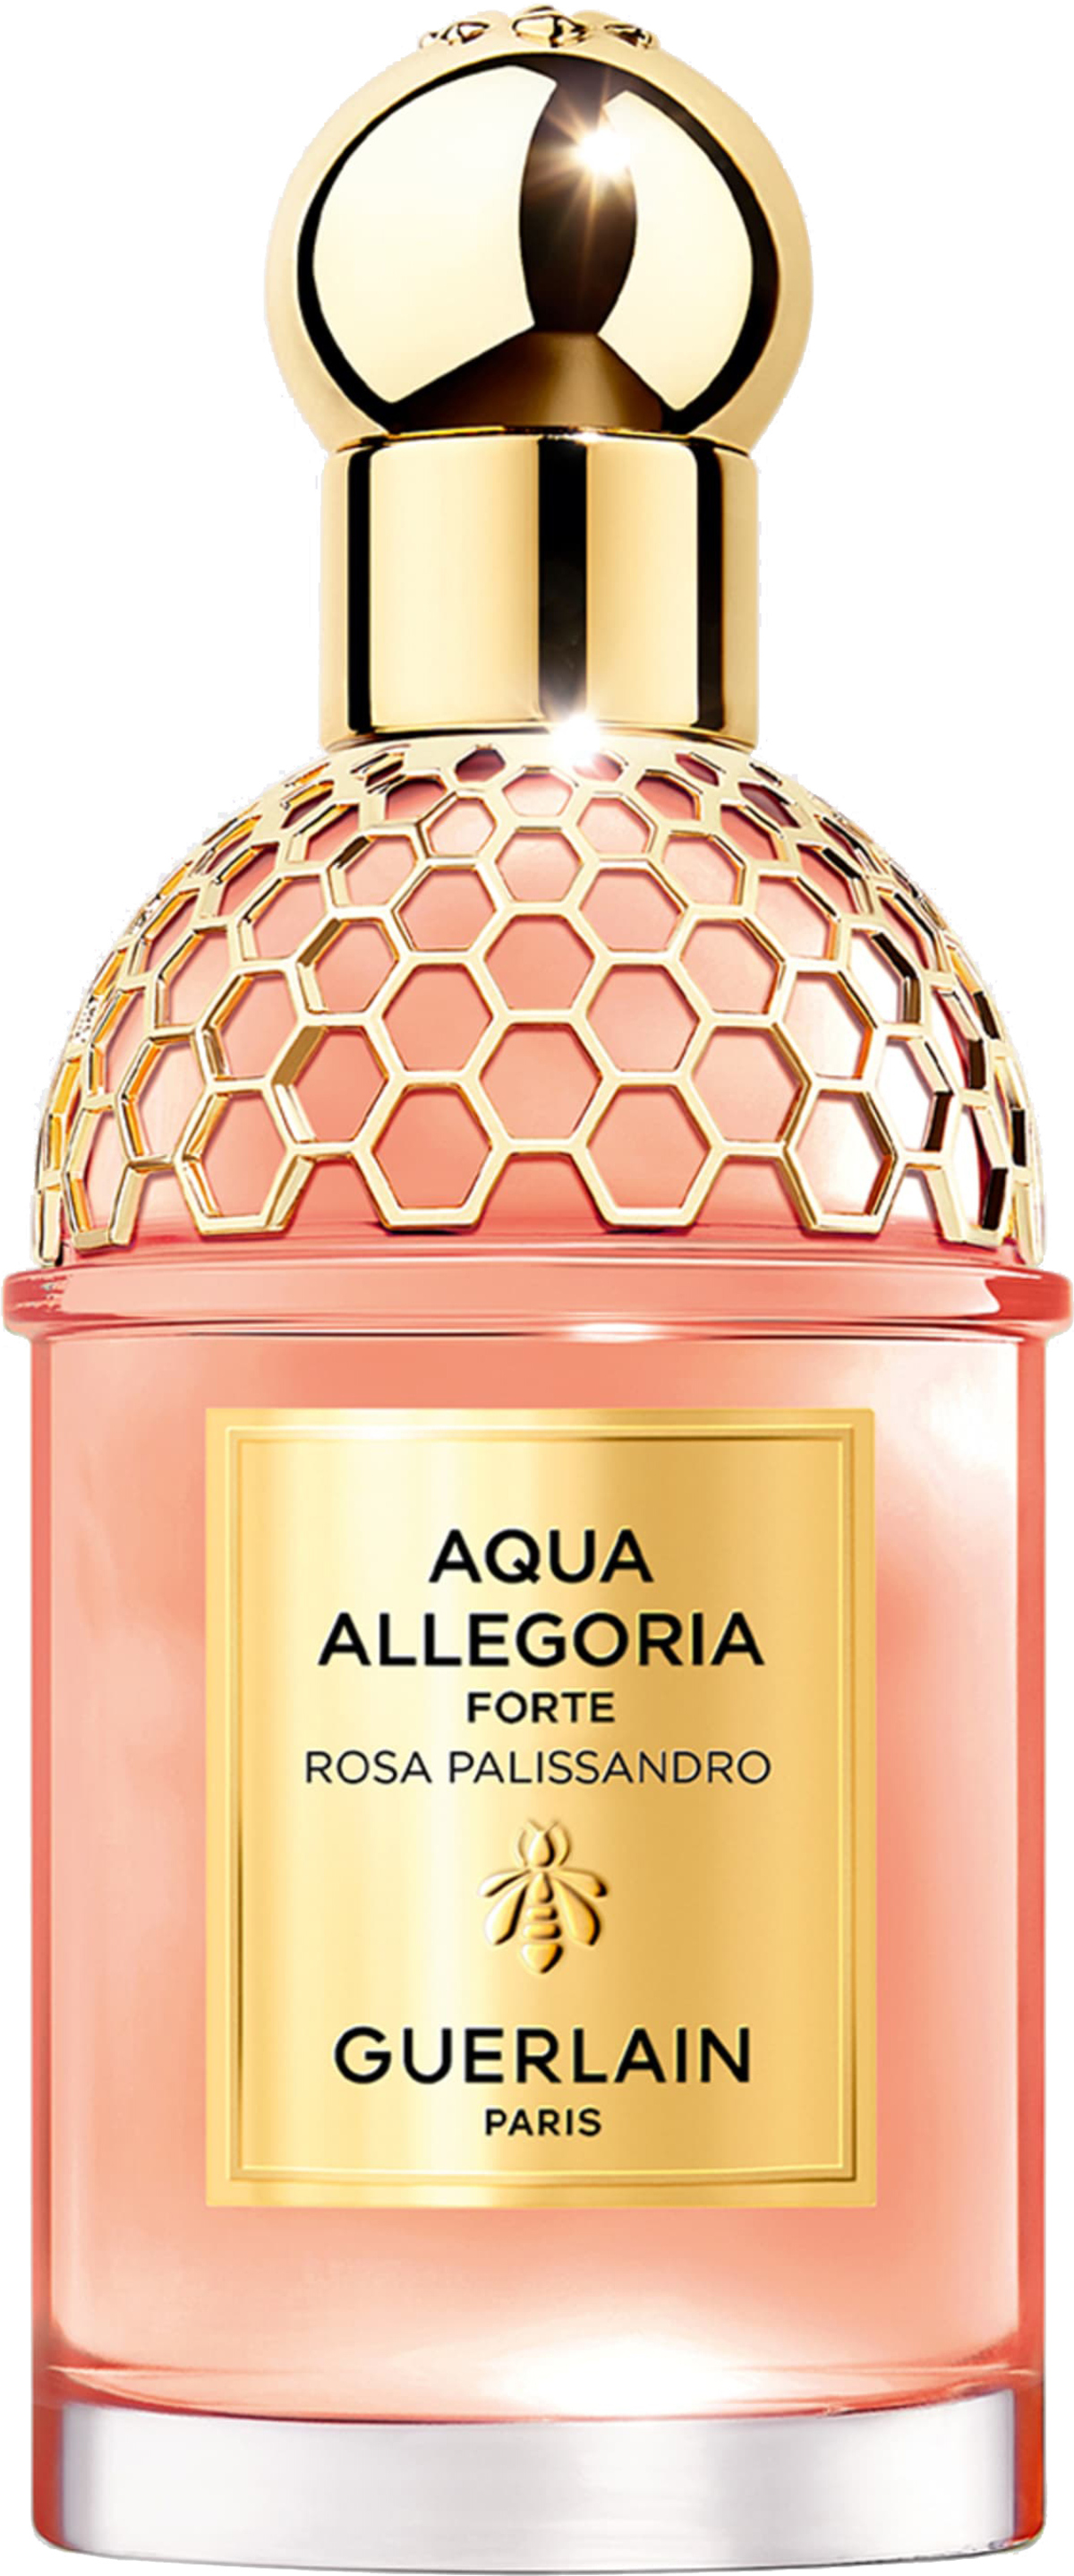 Aqua Allegoria Forte Rosa Palissandro